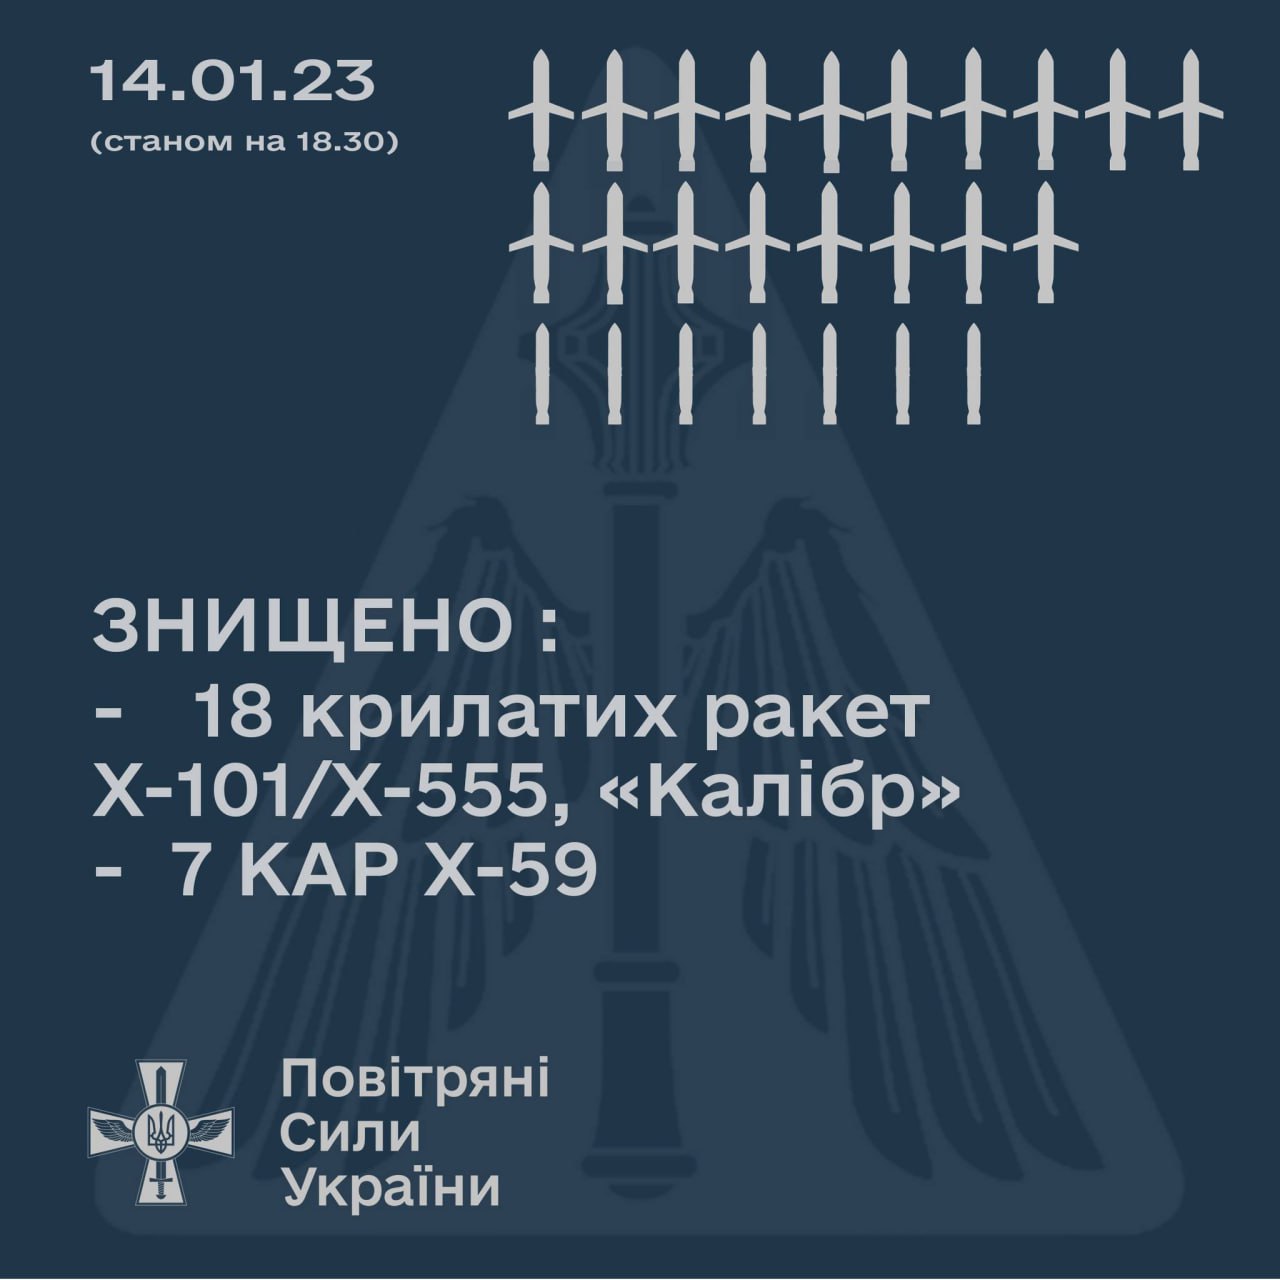 Скільки ракет випущено Україною 14 січня